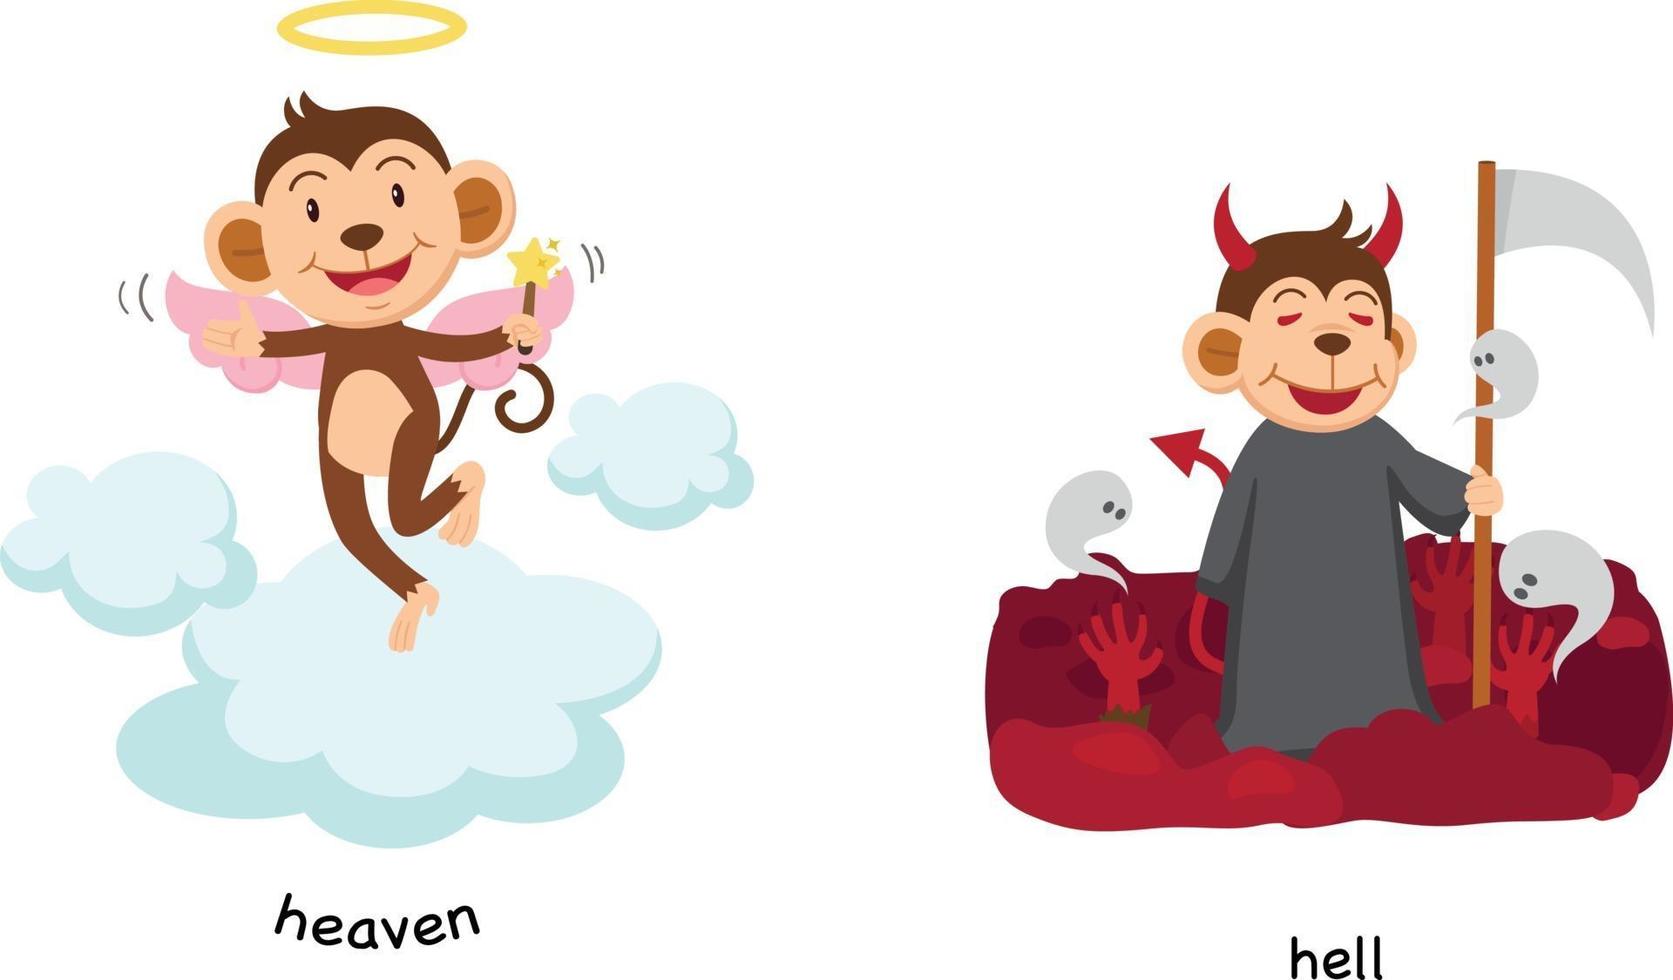 motsatt himmel och helvete vektor illustration